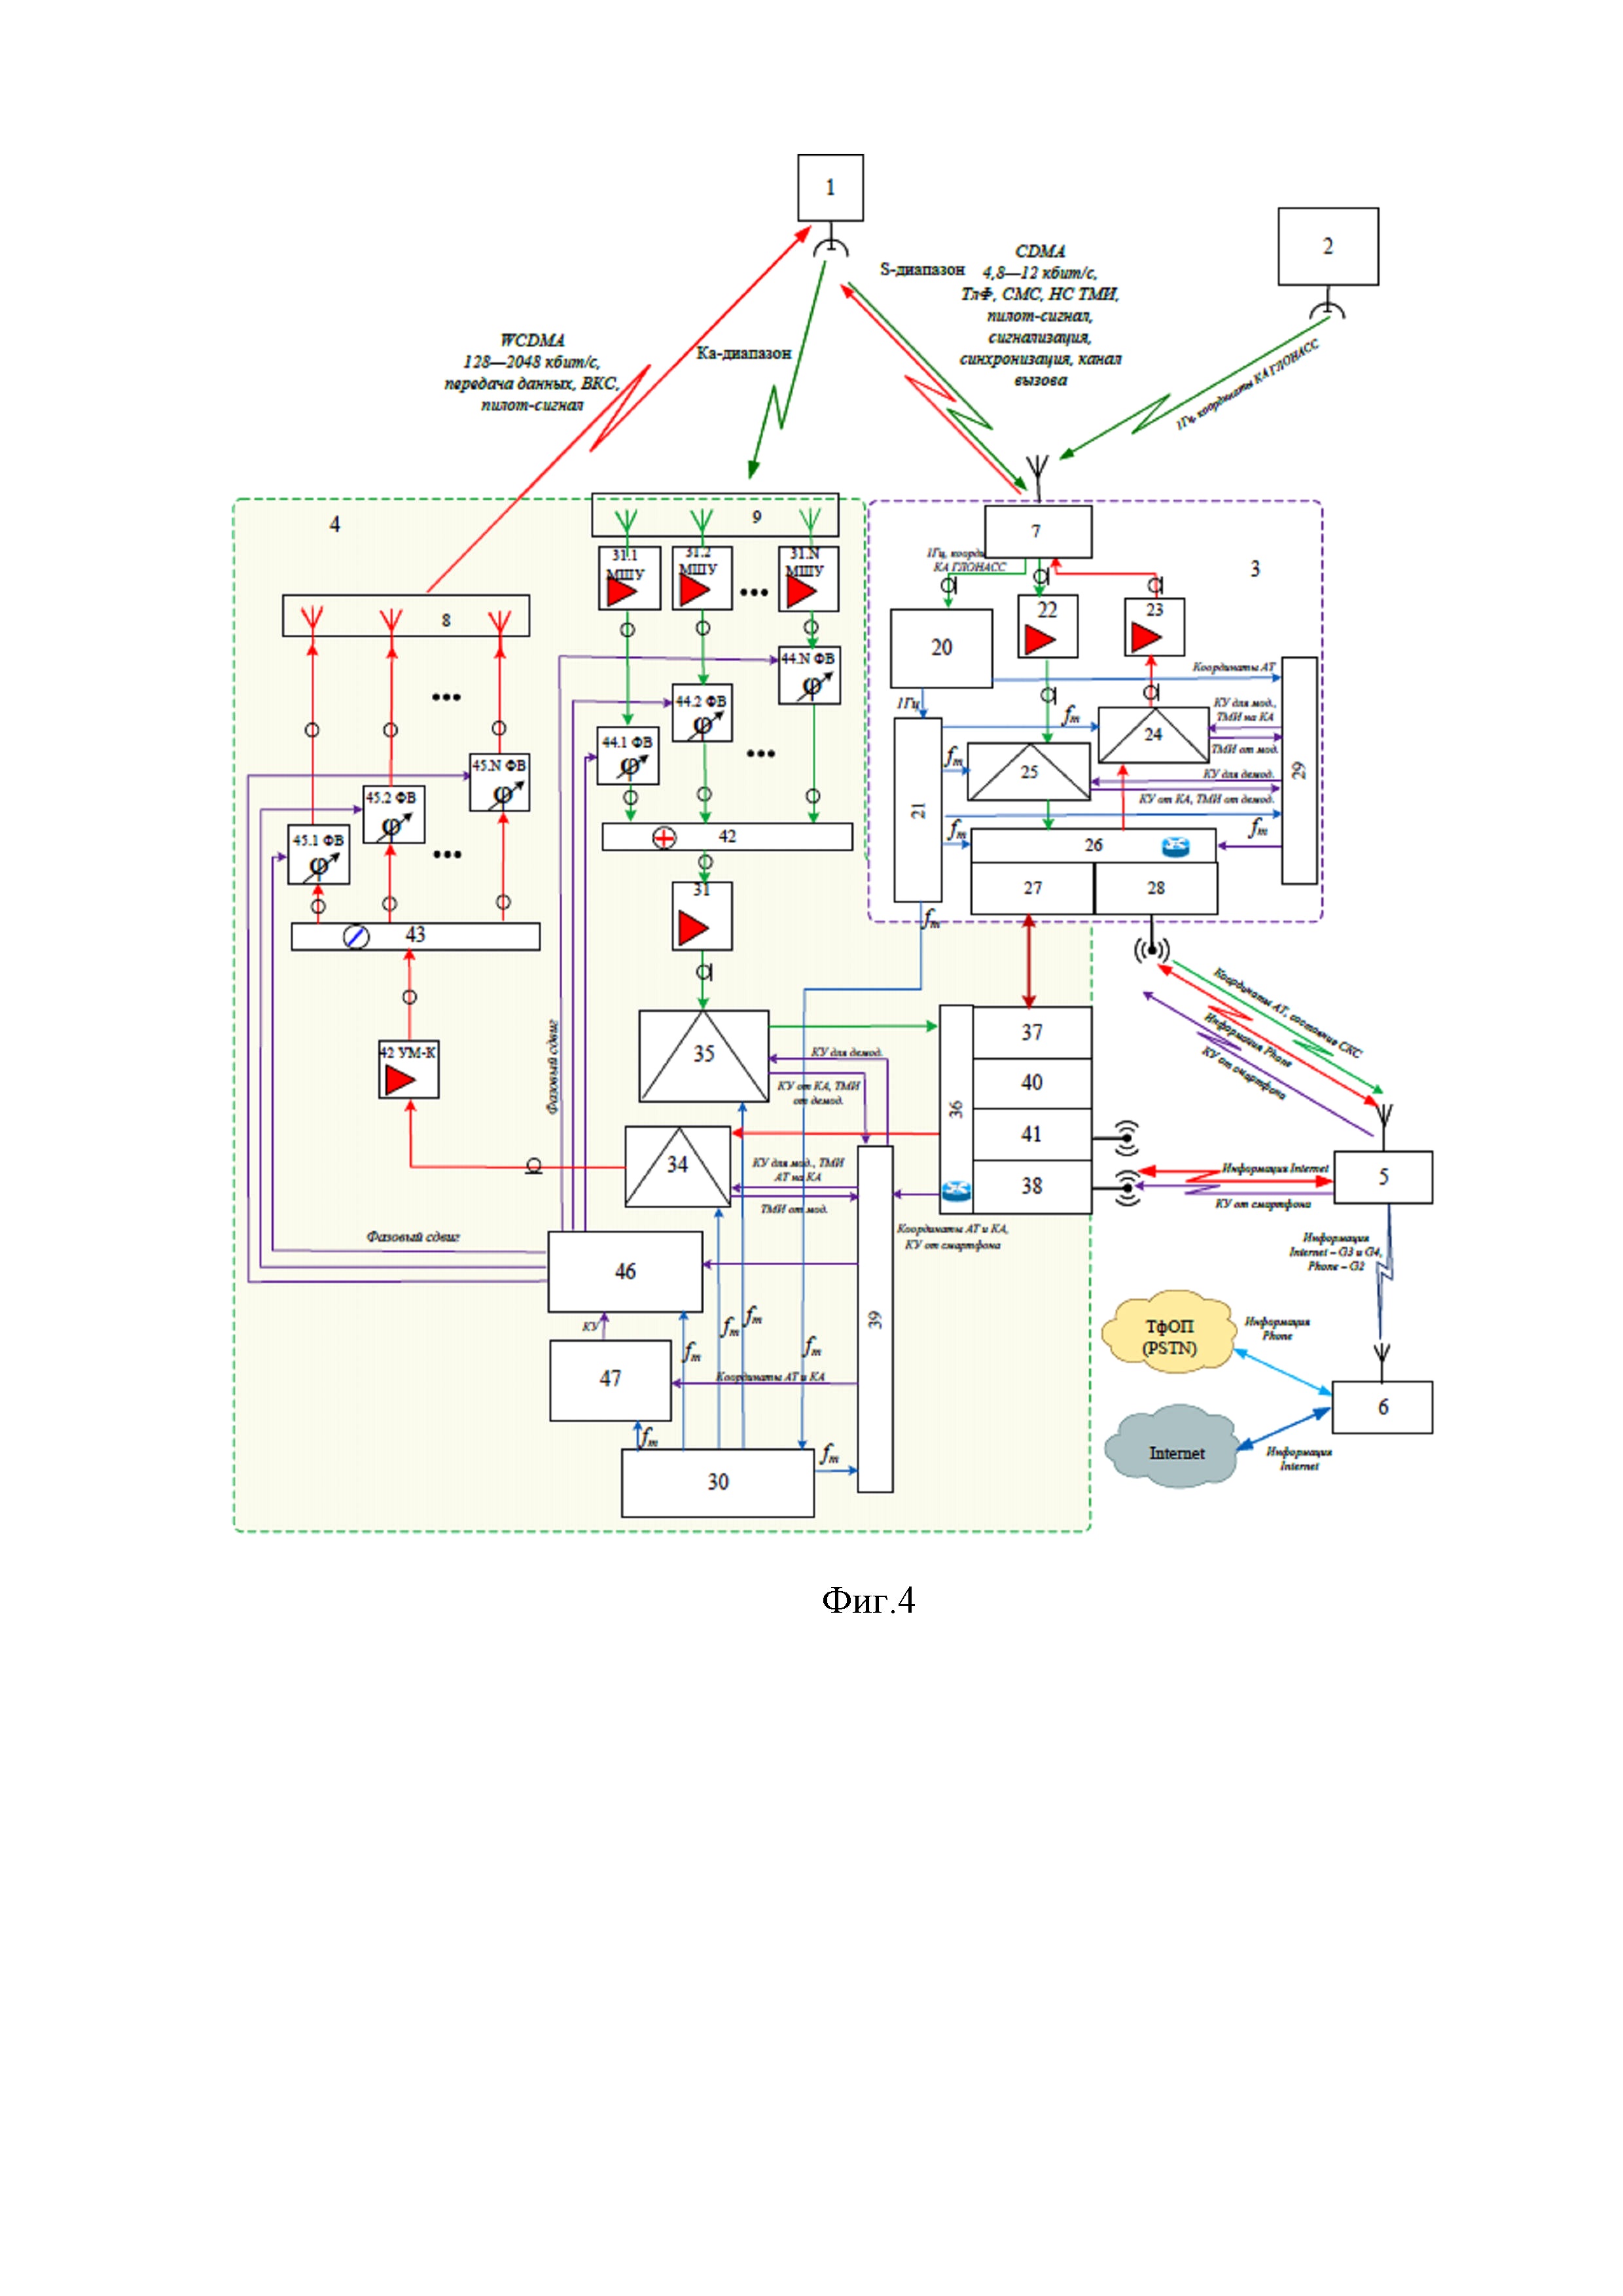 Архитектура абонентского терминала сети персональной спутниковой связи